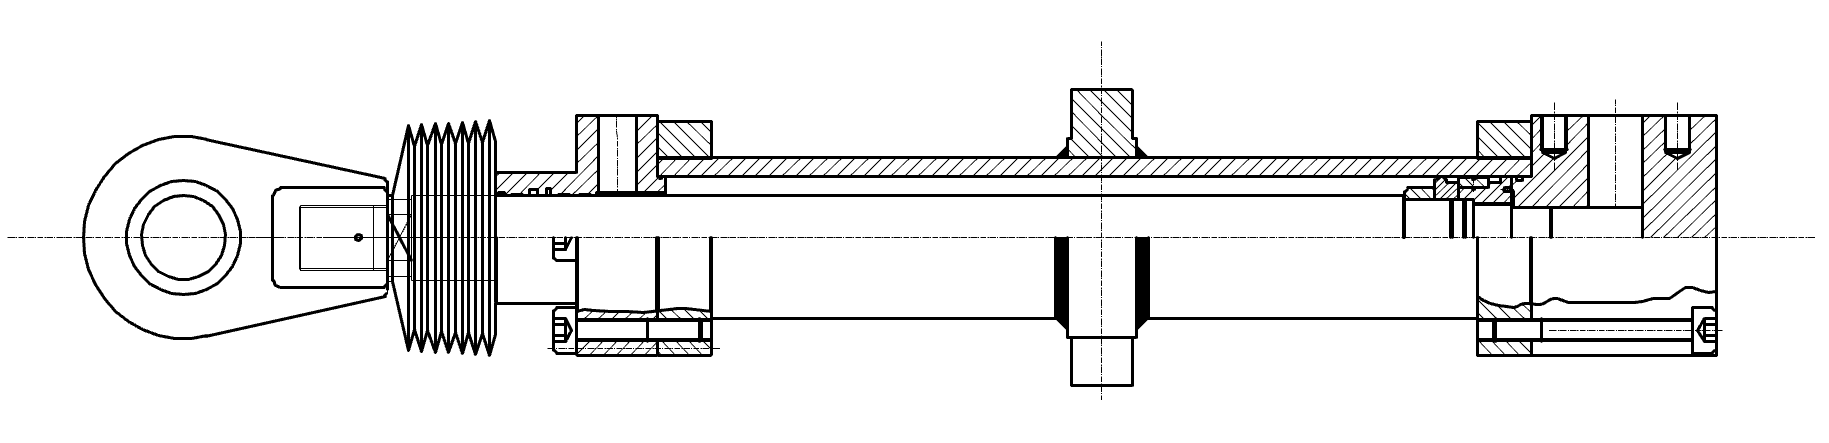 图 7 液压缸结构